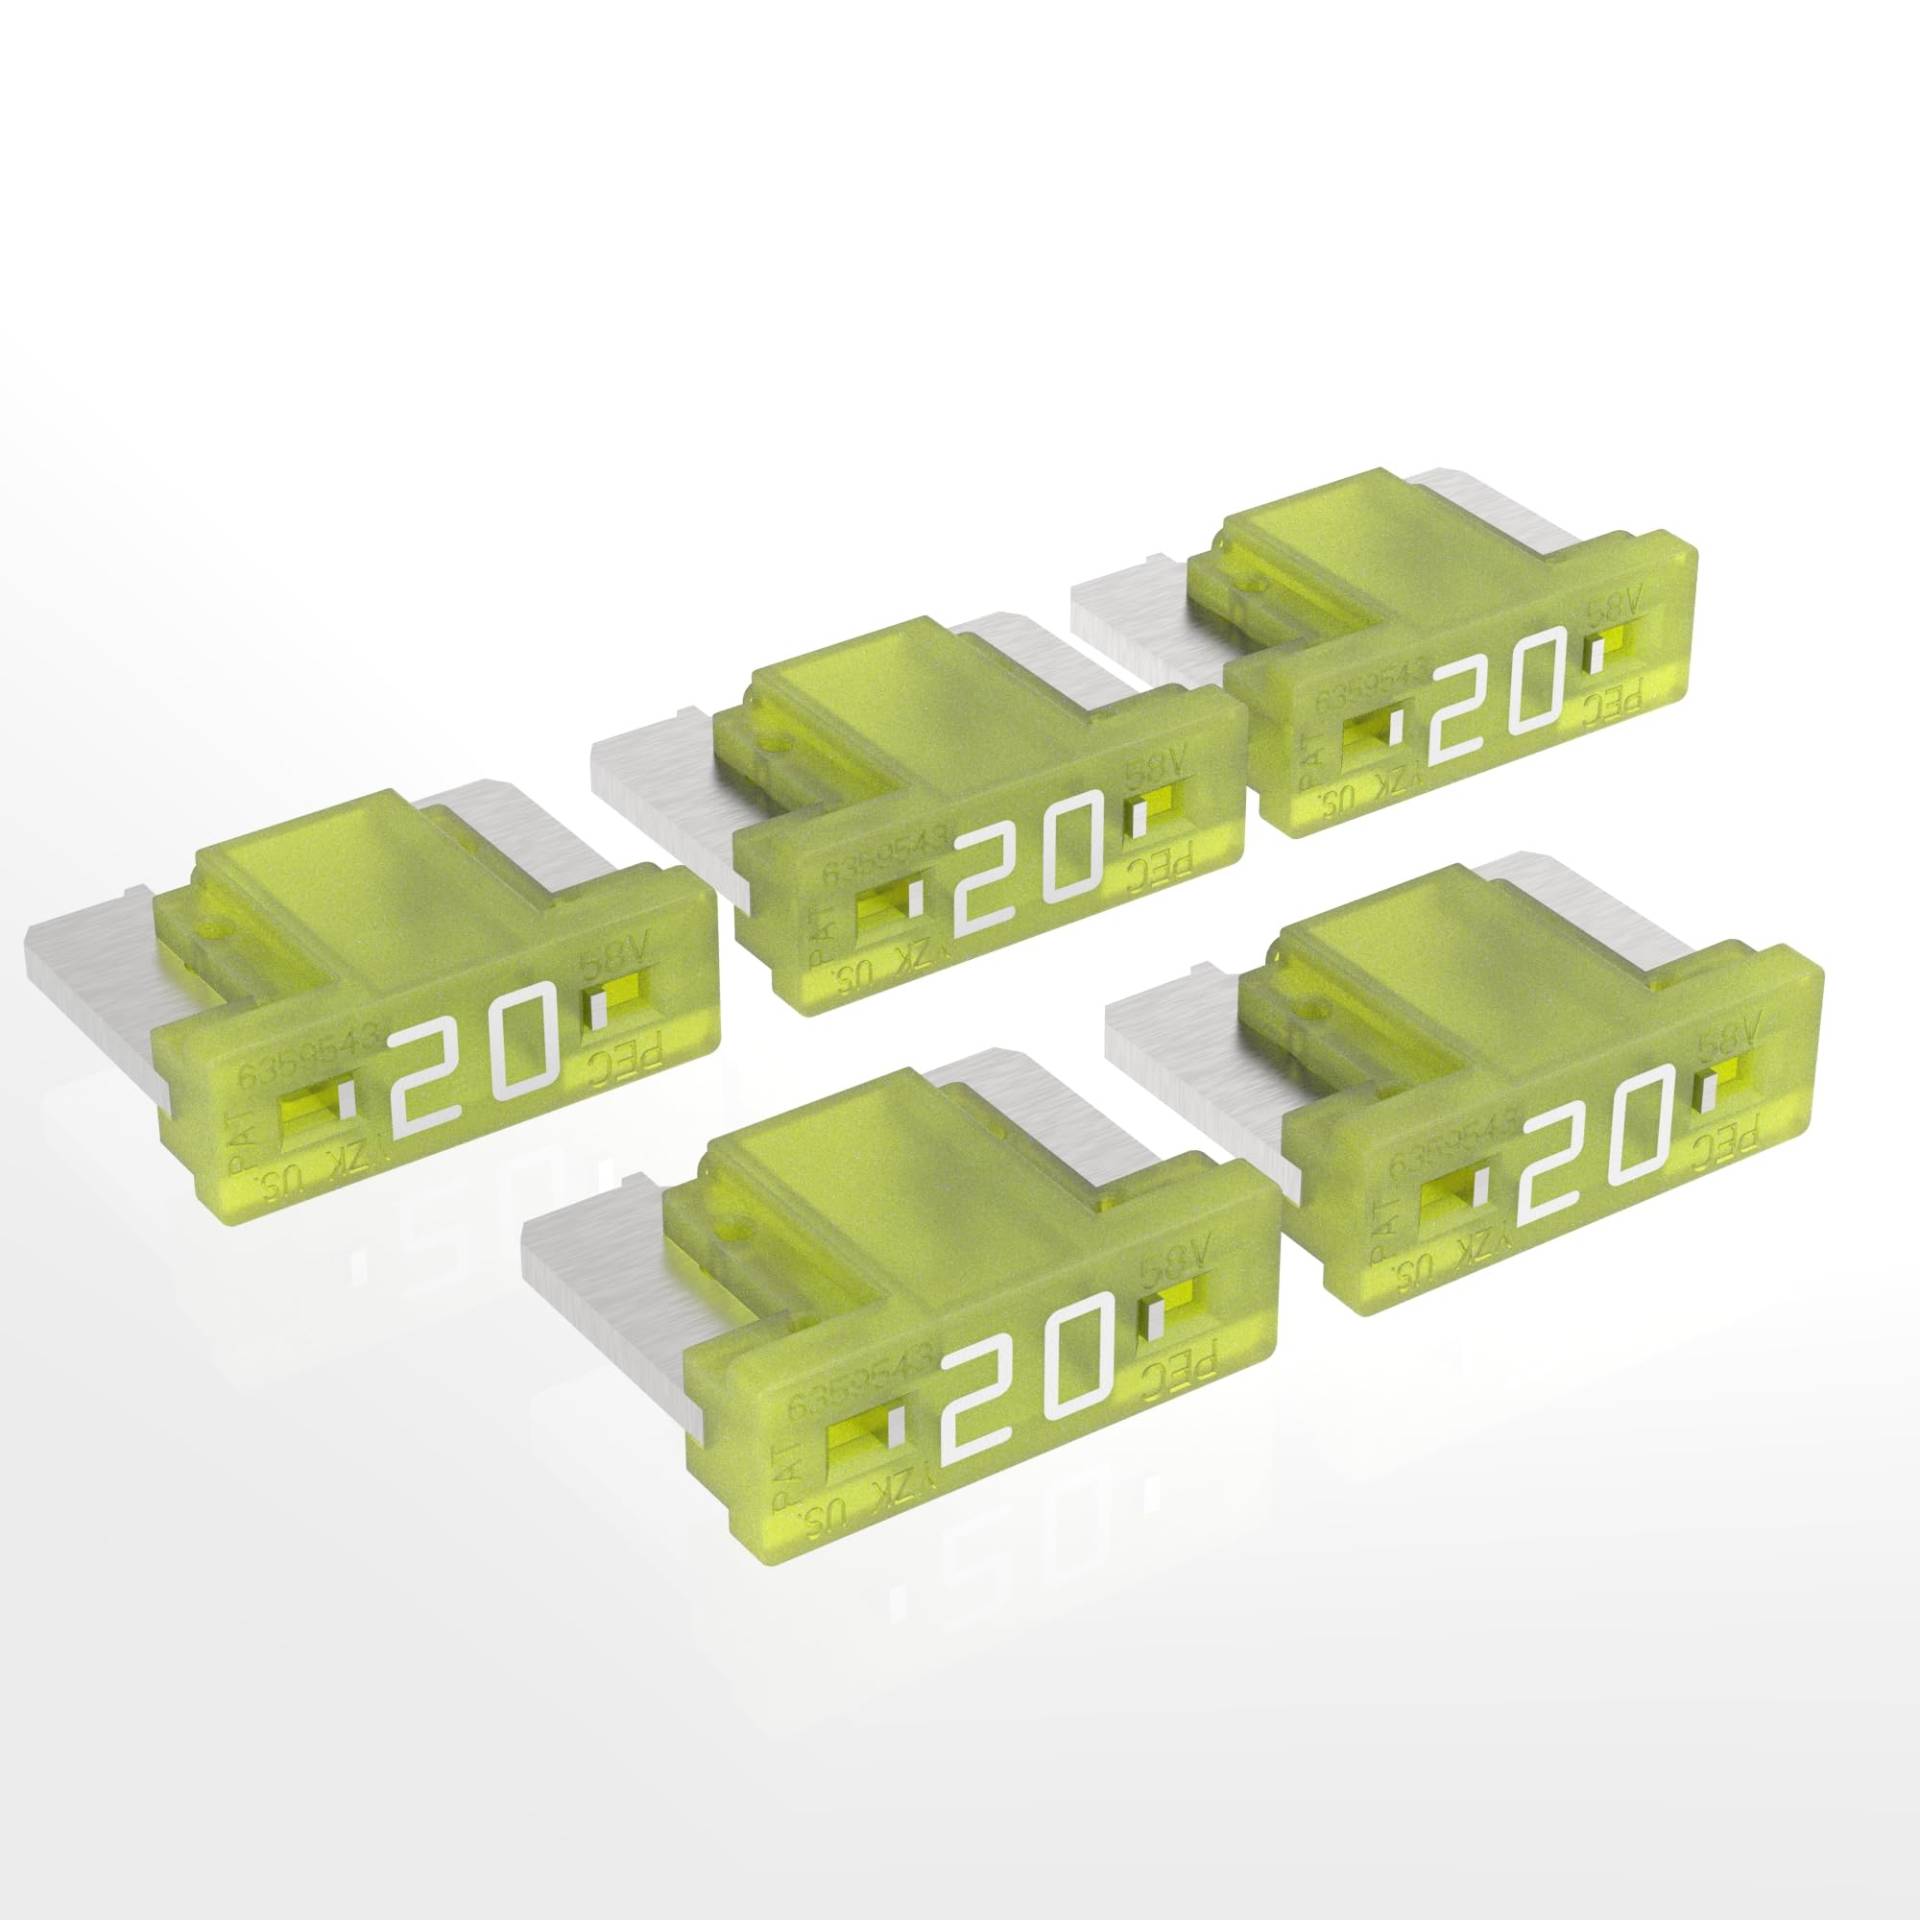 AUPROTEC Mini LP Kfz Sicherungen Flachstecksicherungen 2A - 30A Auswahl: 20A Ampere gelb, 5 Stück von AUPROTEC